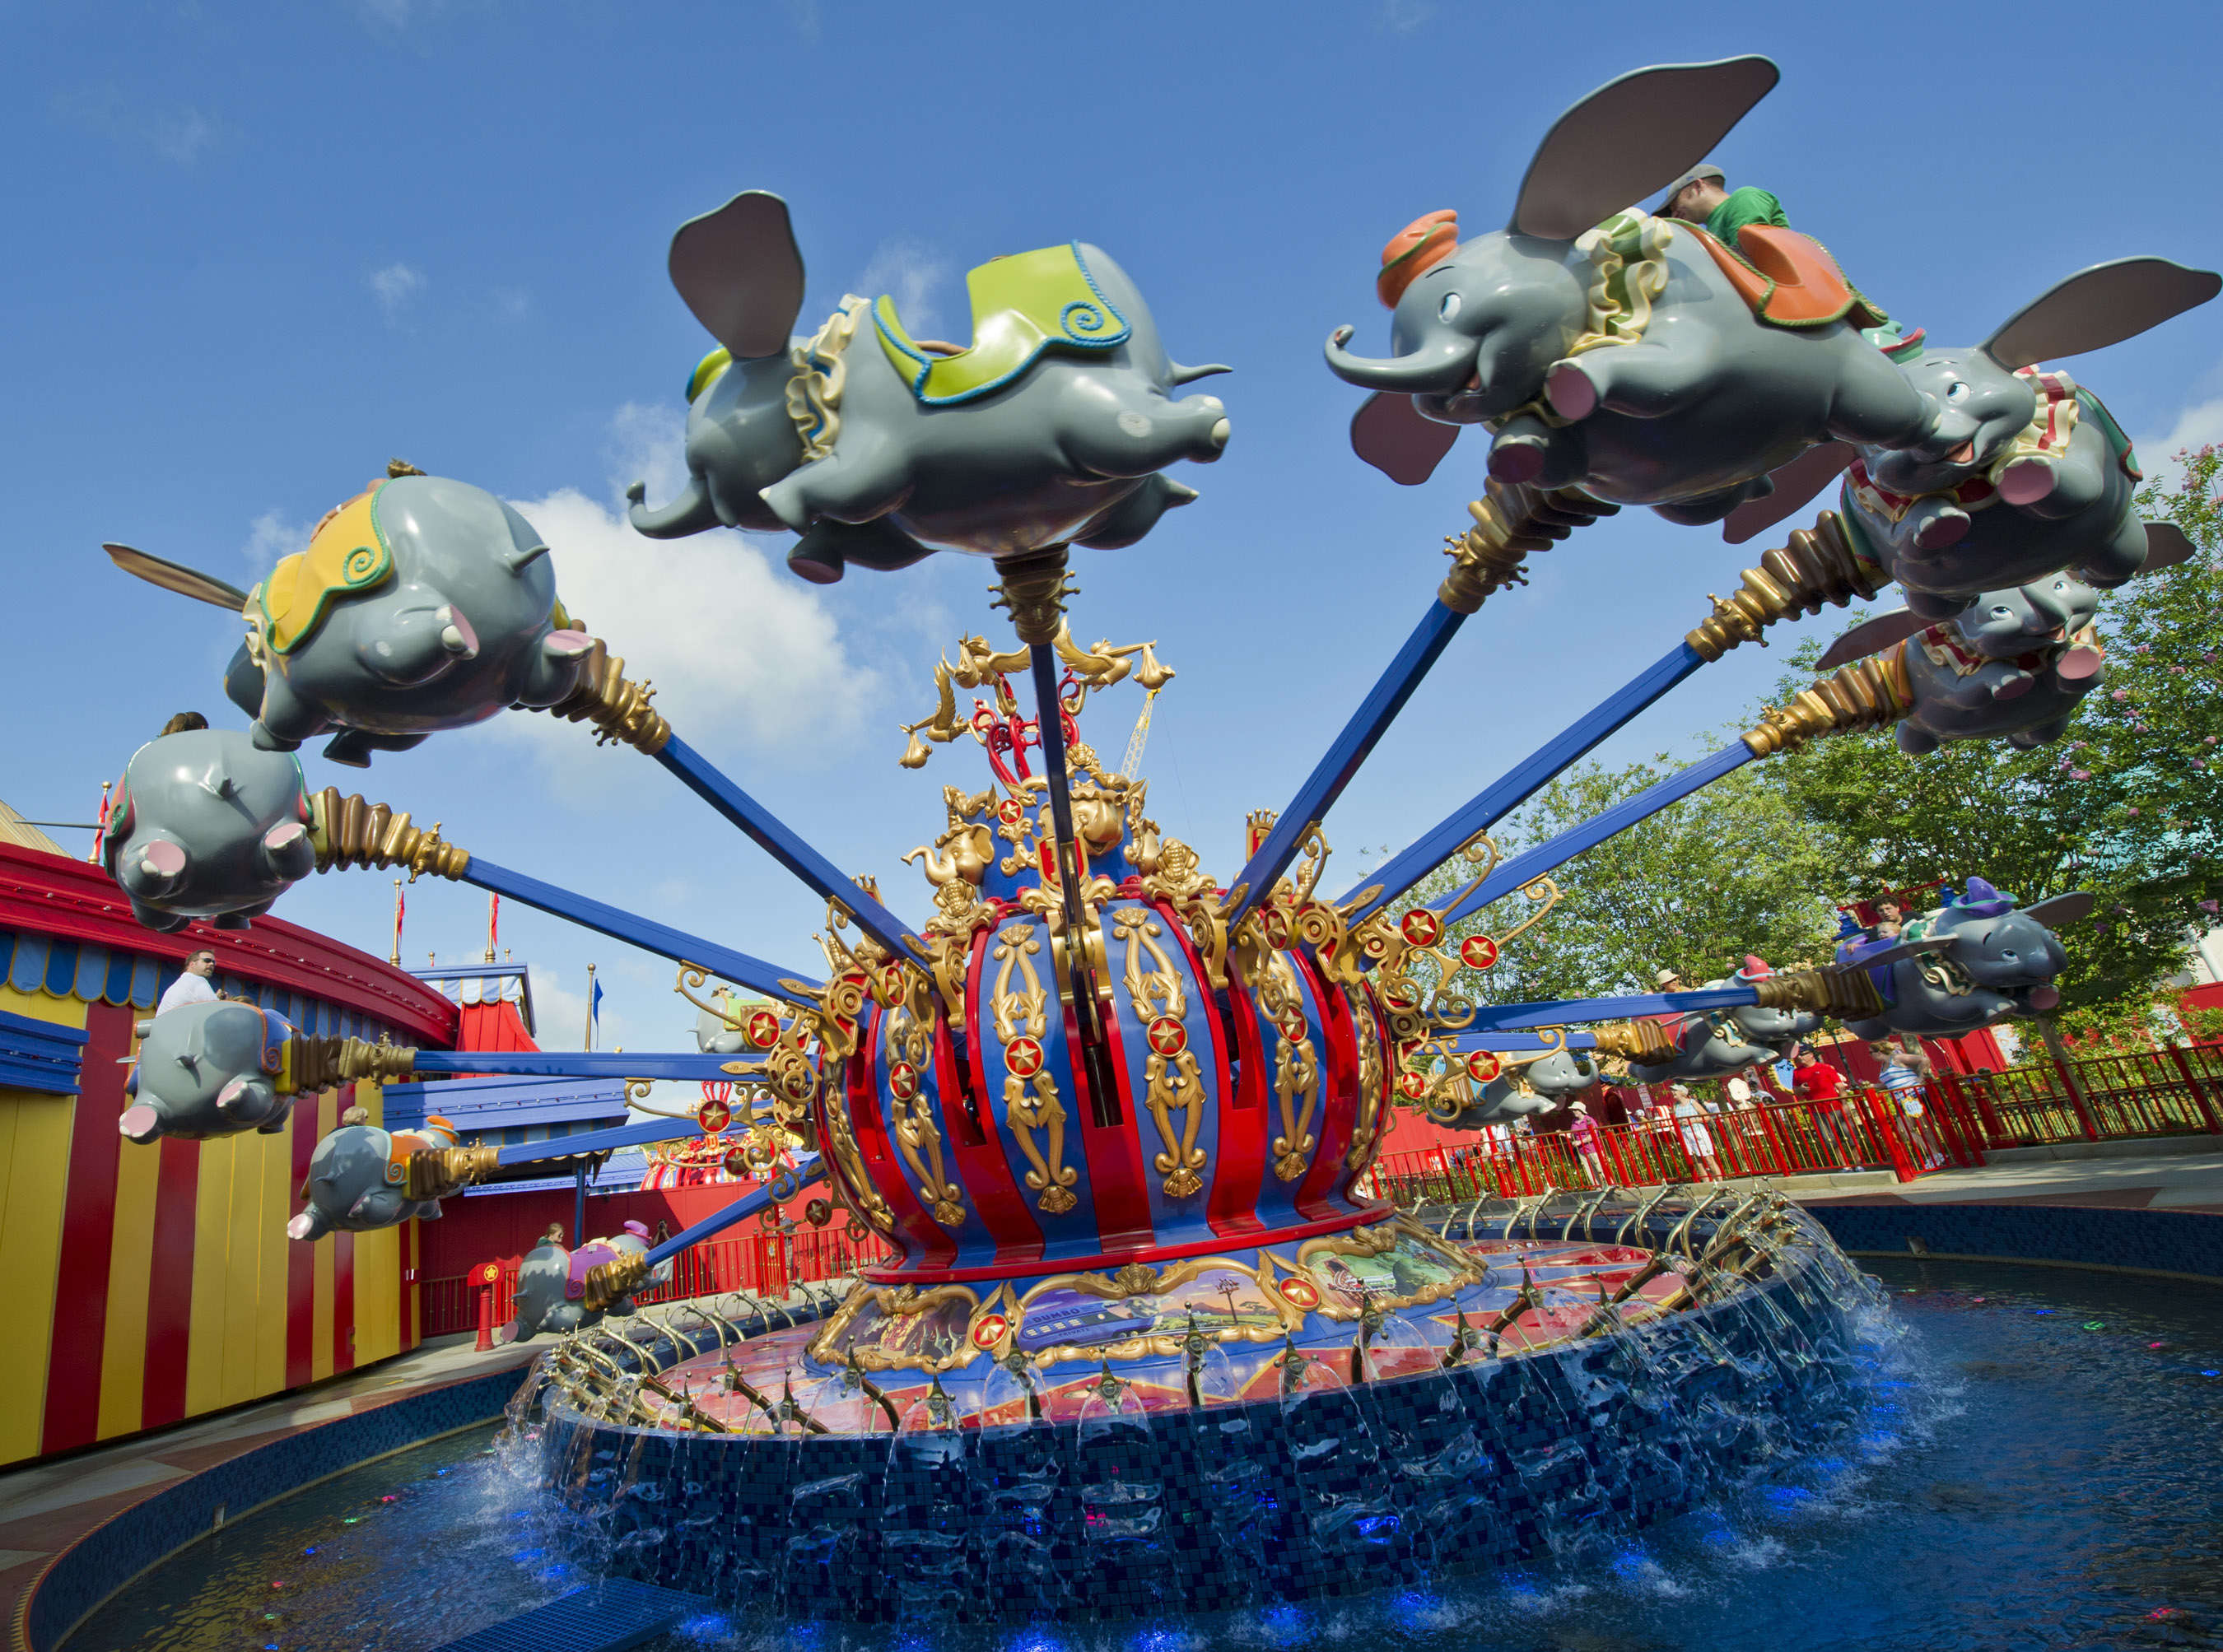 Dumbo the Flying Elephant ride at Disney World